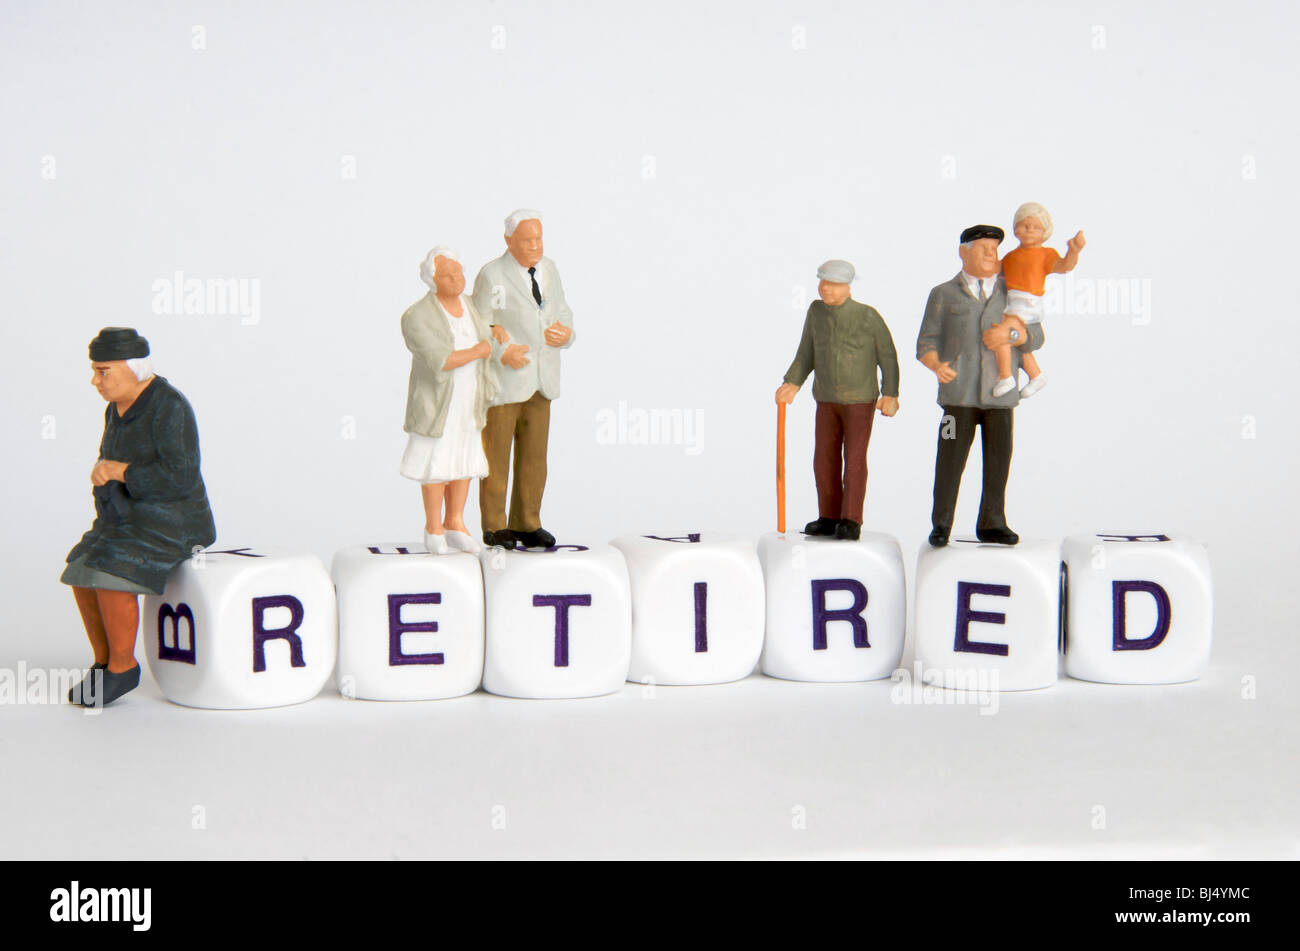 Rentner-Konzept - Rentner, ältere Menschen, mit dem Wort "Ruhestand". Stockfoto